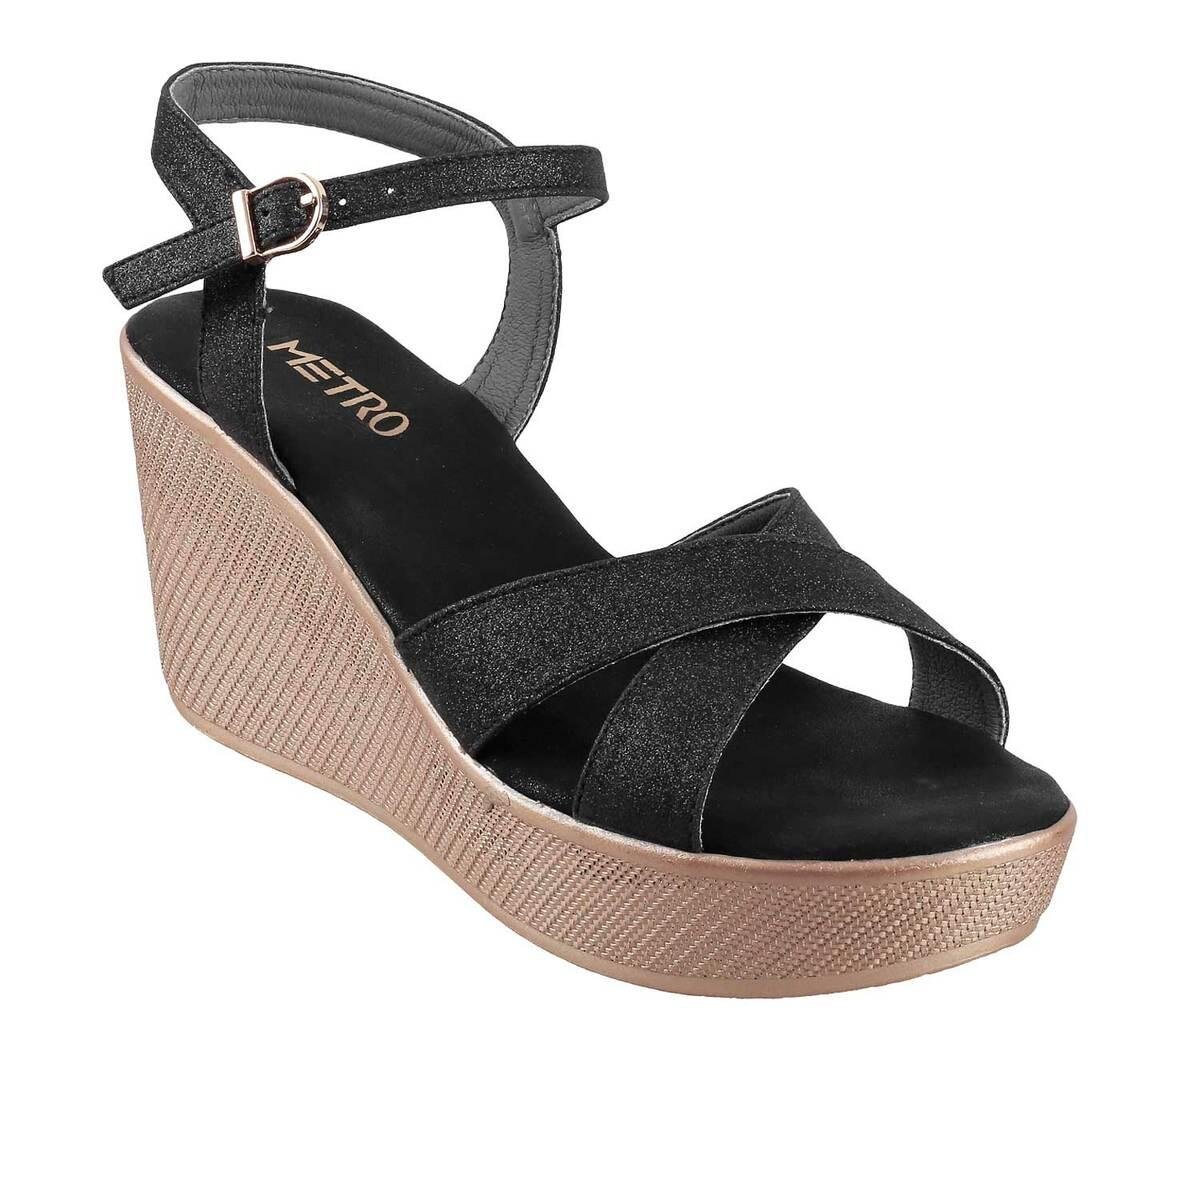 Buy Women Black Casual Sandals Online - 788825 | Allen Solly